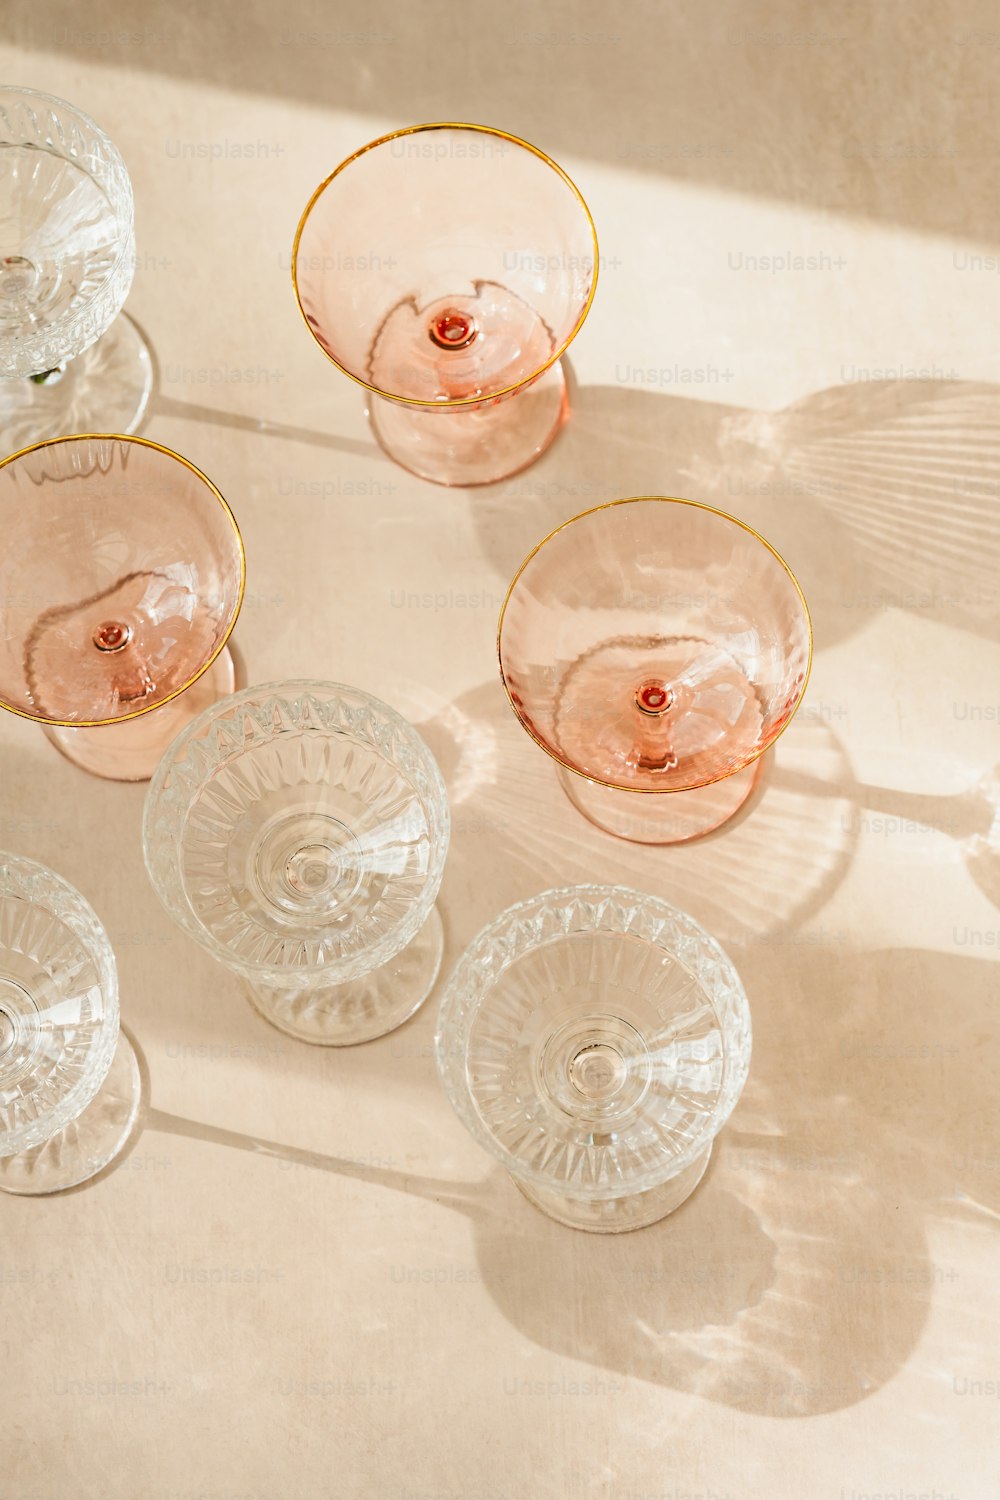 un groupe de bols en verre posés sur une table